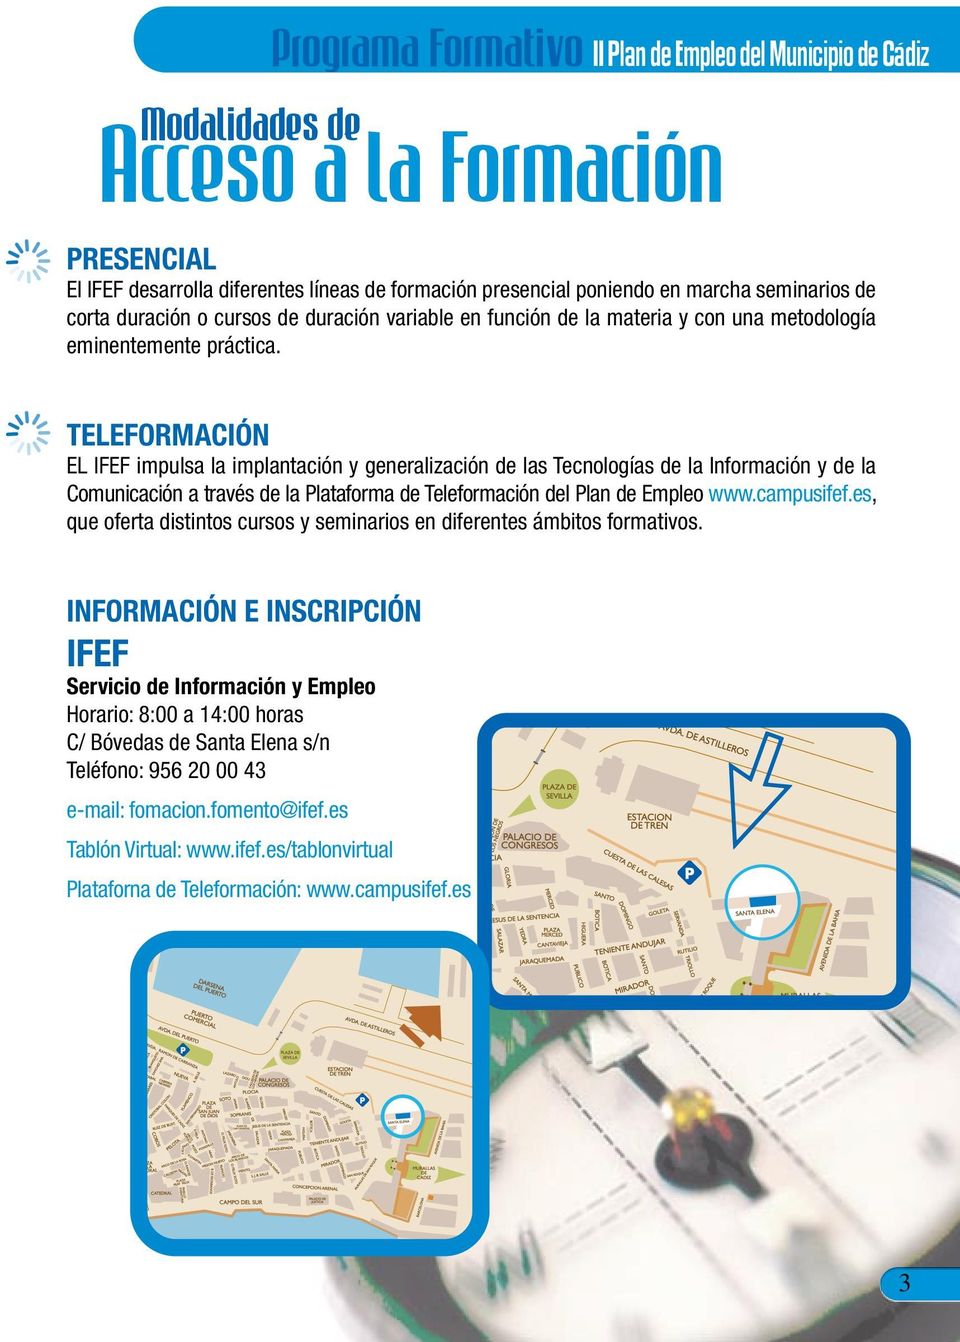 TELEFORMACIÓN EL IFEF impulsa la implantación y generalización de las Tecnologías de la Información y de la Comunicación a través de la Plataforma de Teleformación del Plan de Empleo www.campusifef.